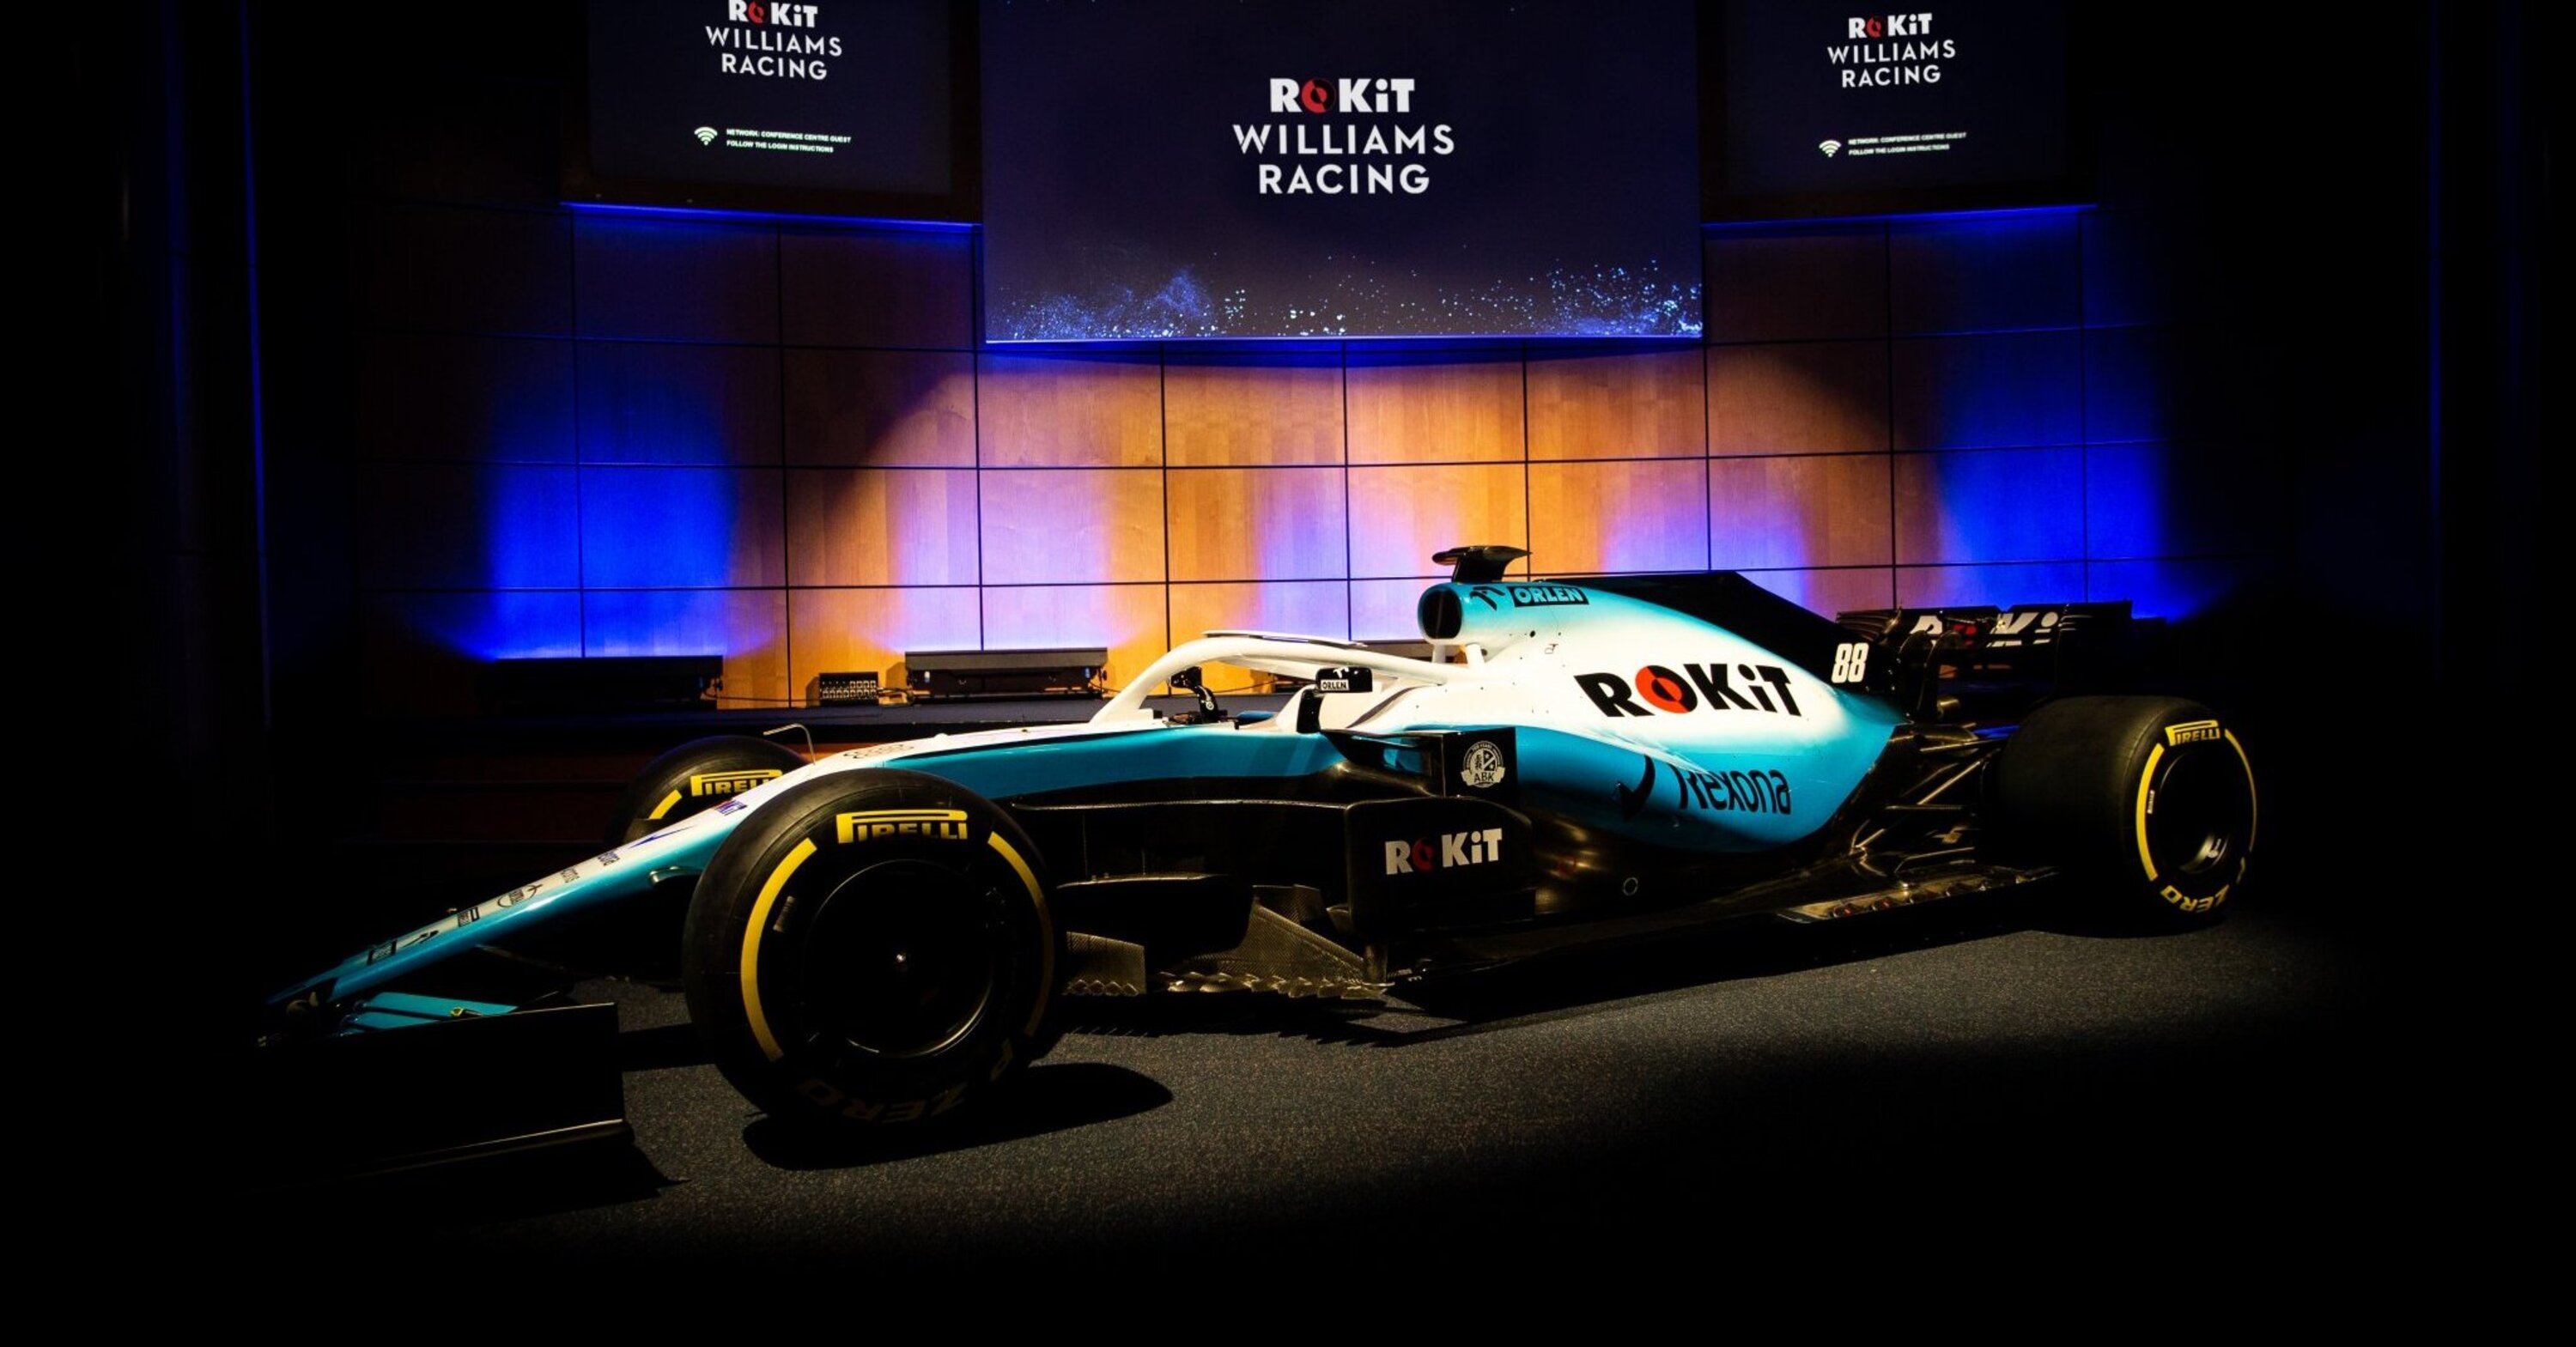 F1 2019: Williams, tolti i veli alla nuova livrea